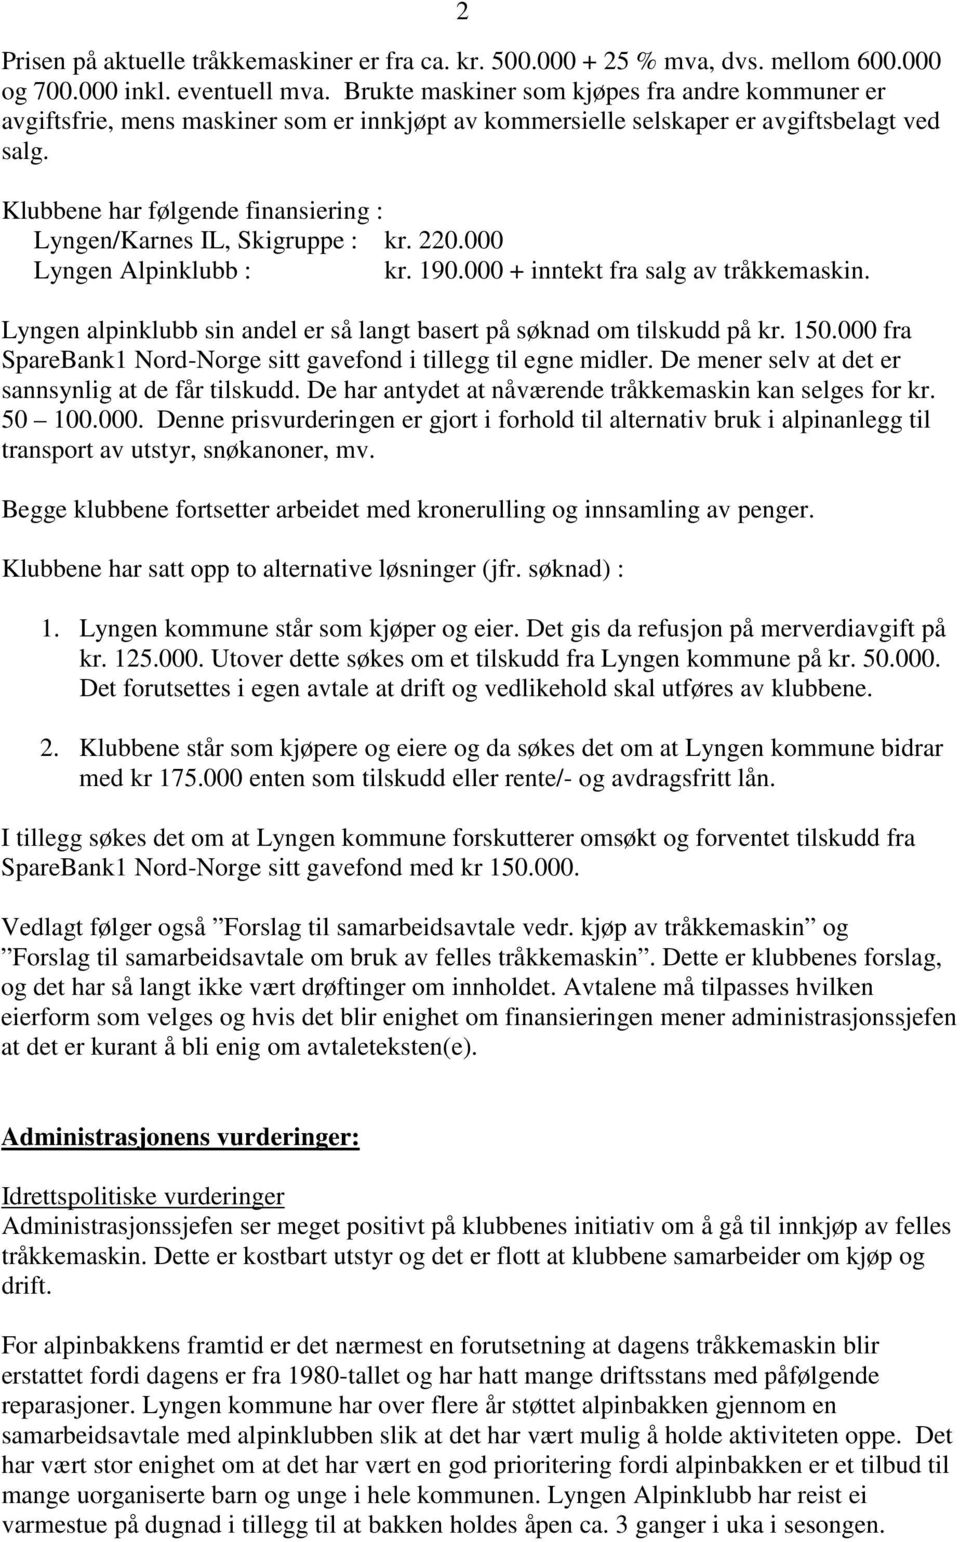 Klubbene har følgende finansiering : Lyngen/Karnes IL, Skigruppe : kr. 220.000 Lyngen Alpinklubb : kr. 190.000 + inntekt fra salg av tråkkemaskin.